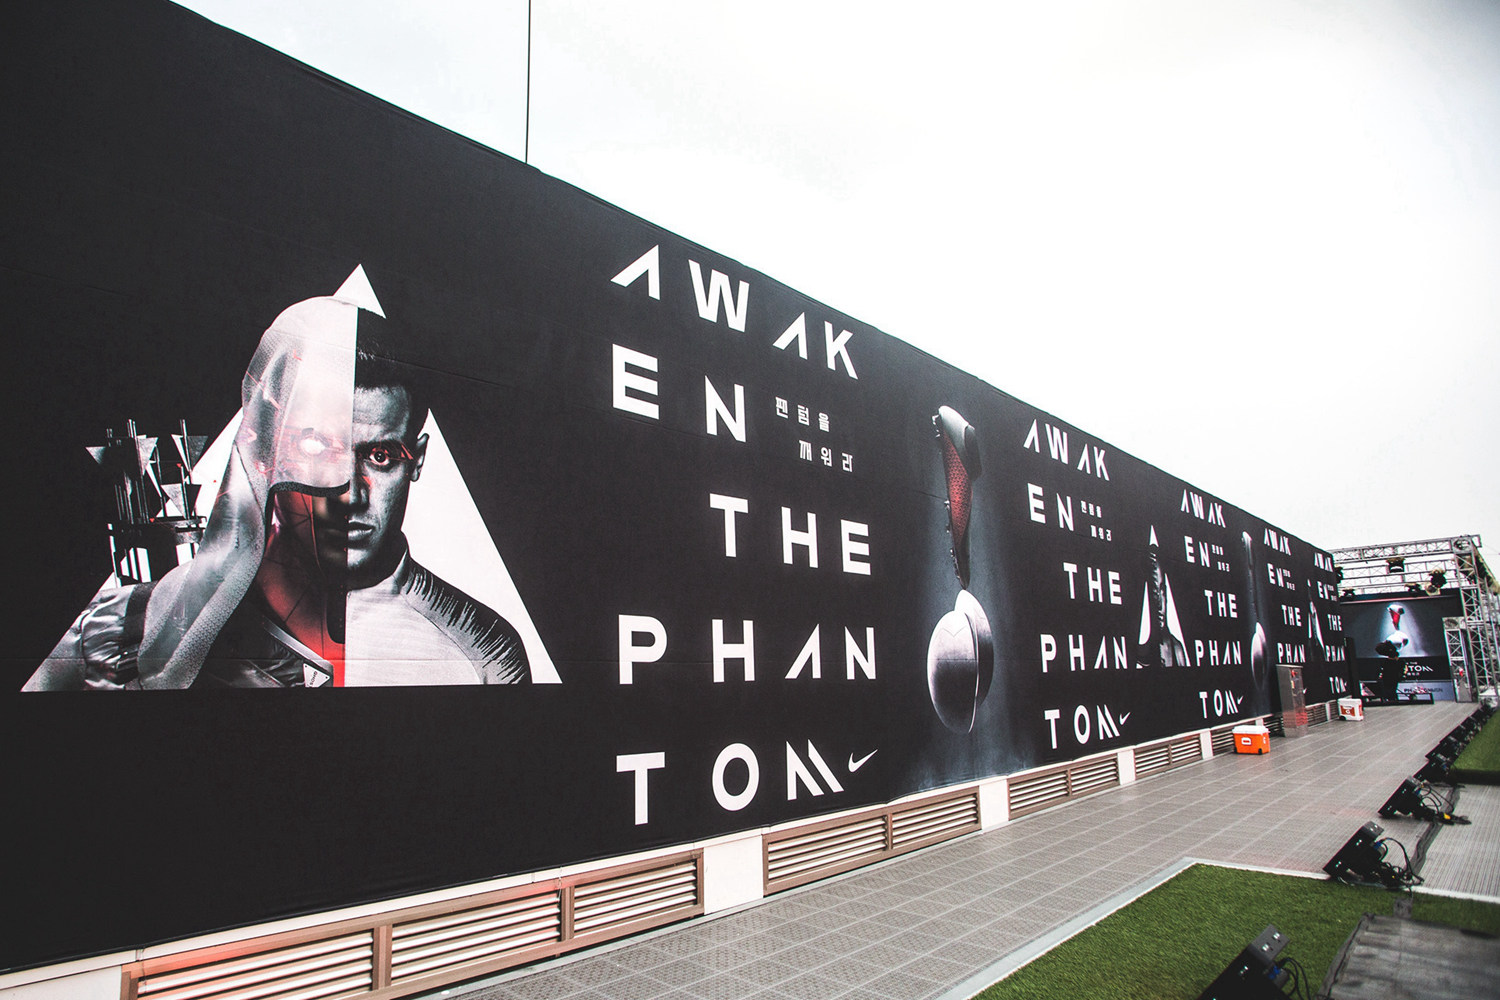 耐克在首尔举办phantomvsn媒体发布会